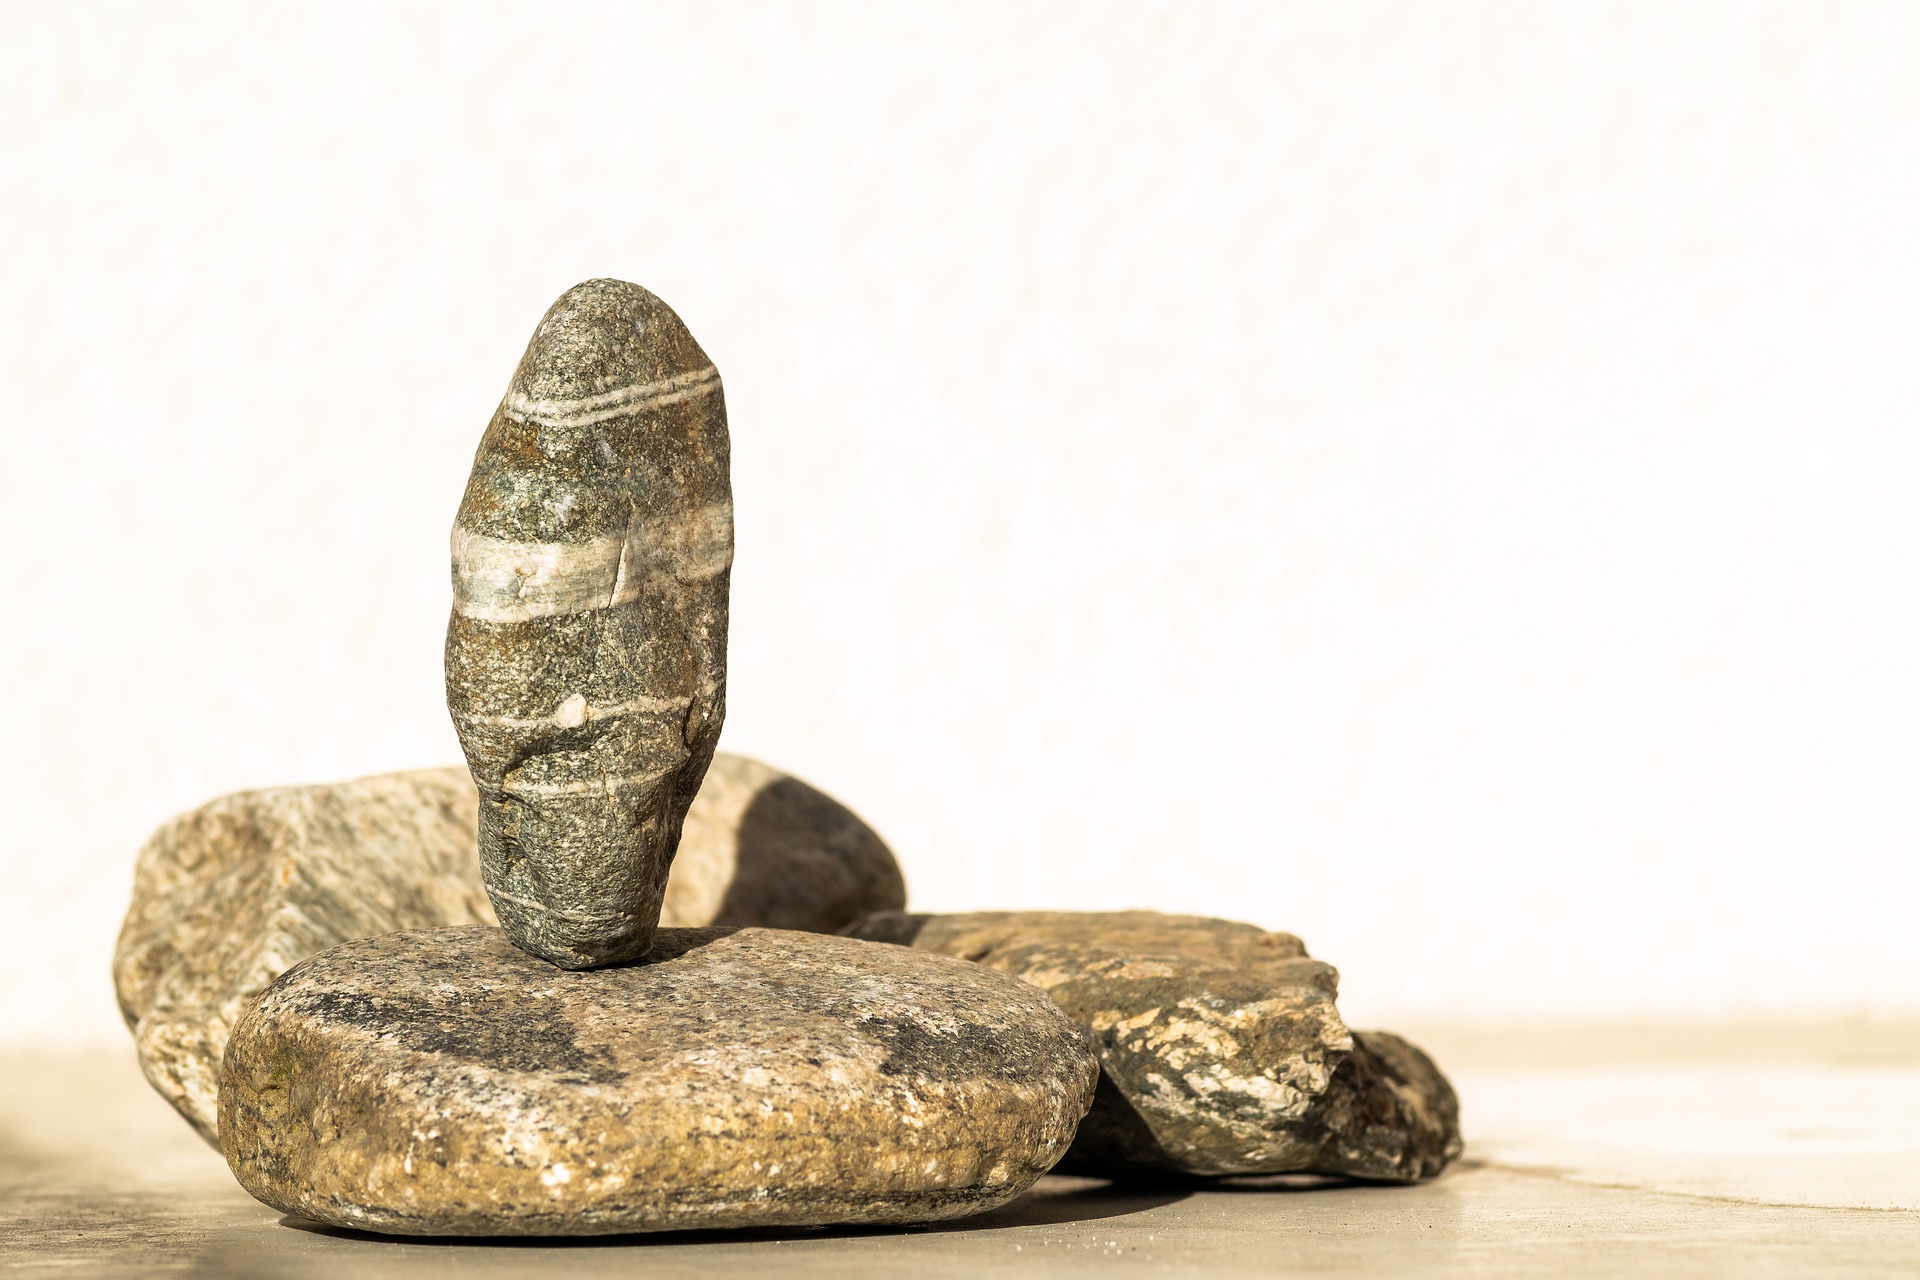 Ribuan perkakas batu dari Periode Paleolitikum ditemukan di China barat laut